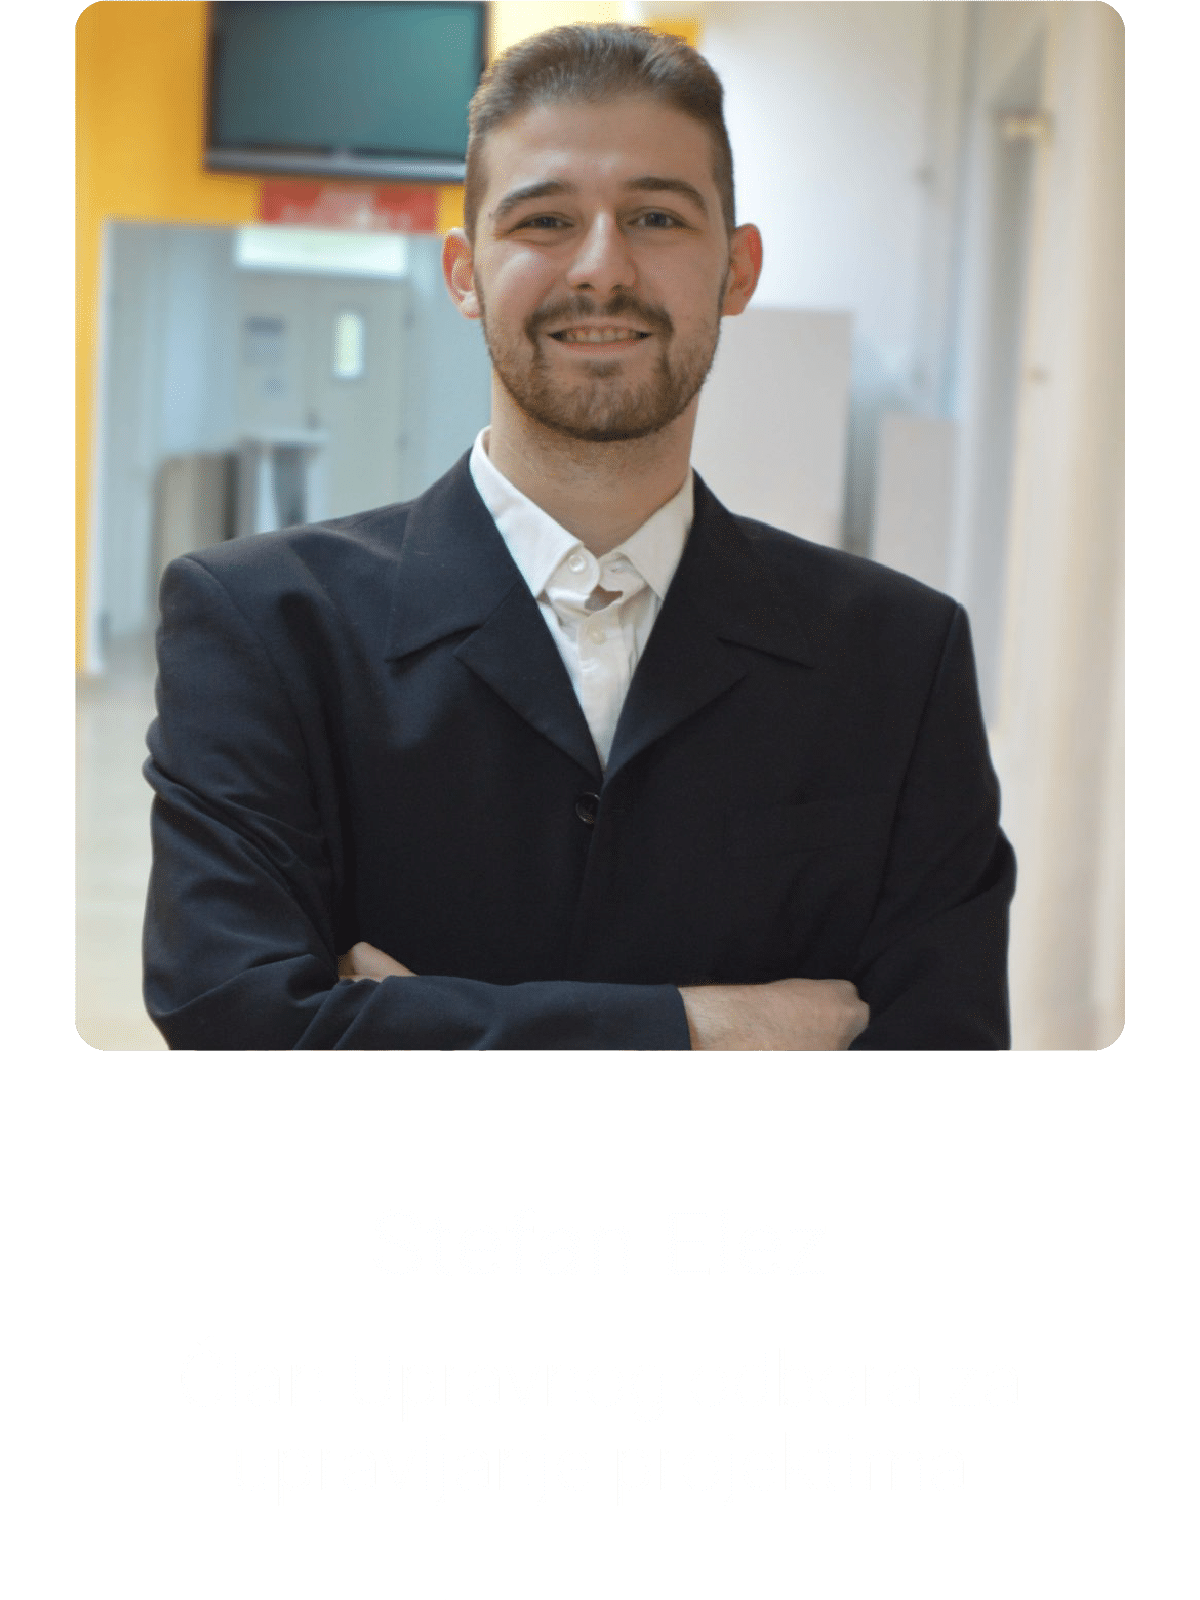 Stefan Elez